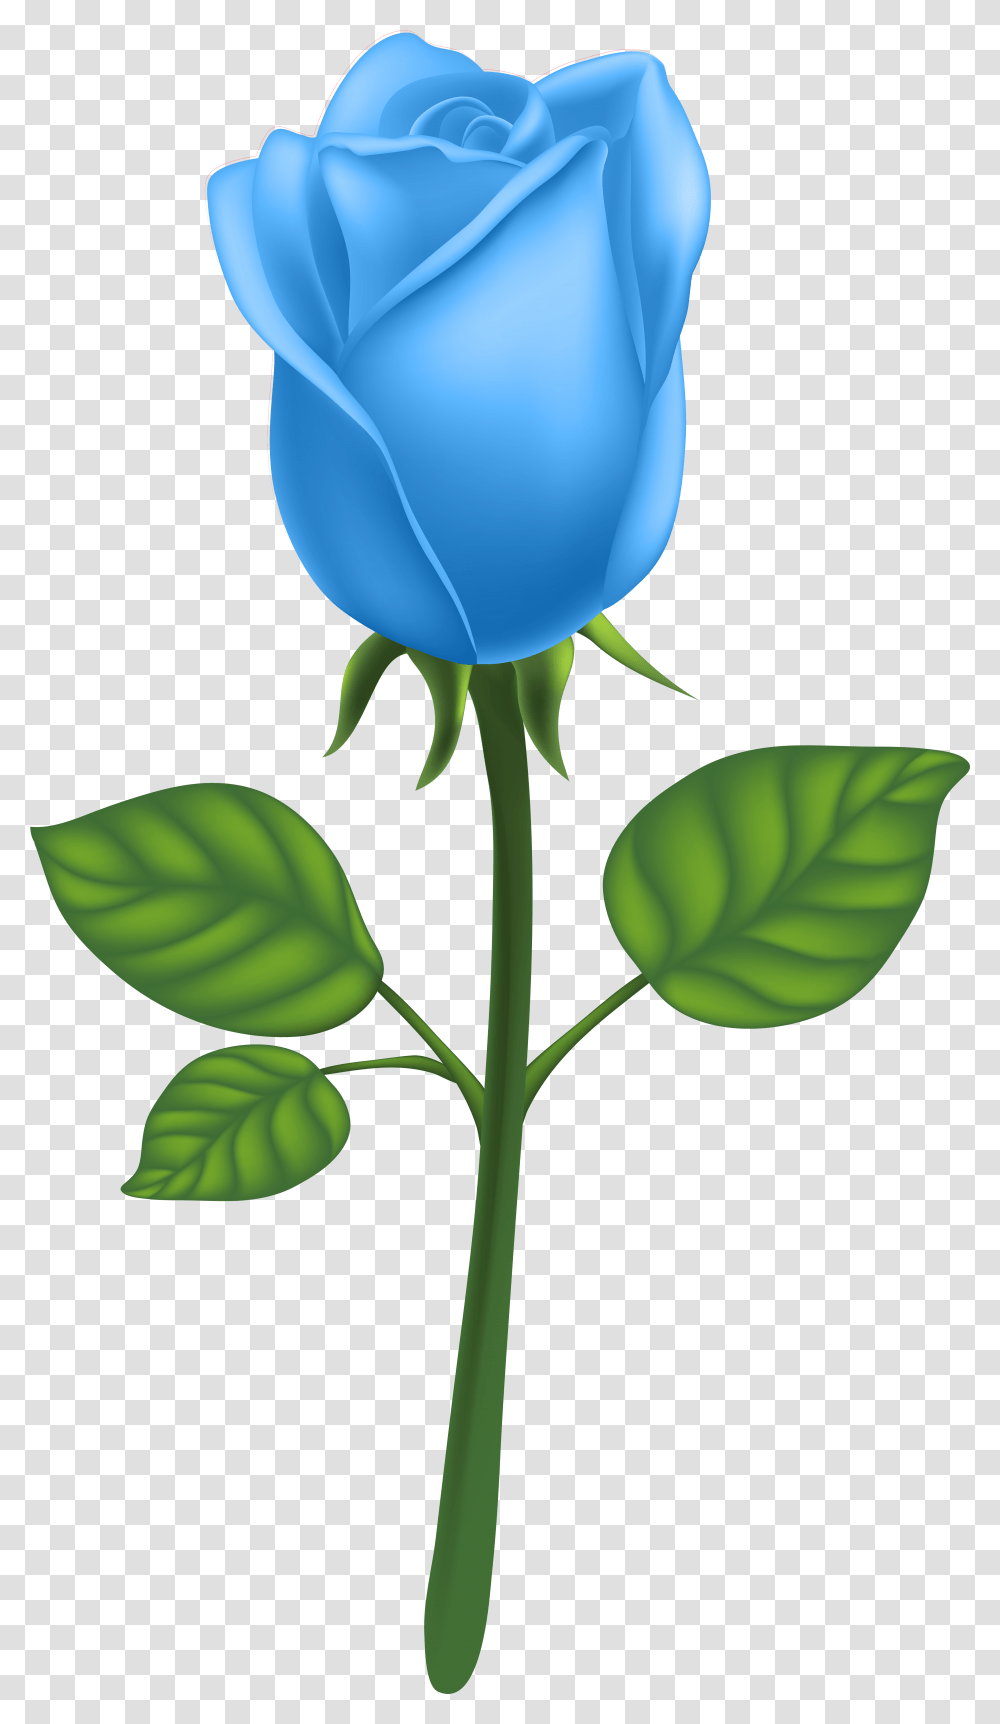 Garden Roses Adobe Illustrator Clip Art Blue, Flower, Plant, Blossom, Leaf Transparent Png